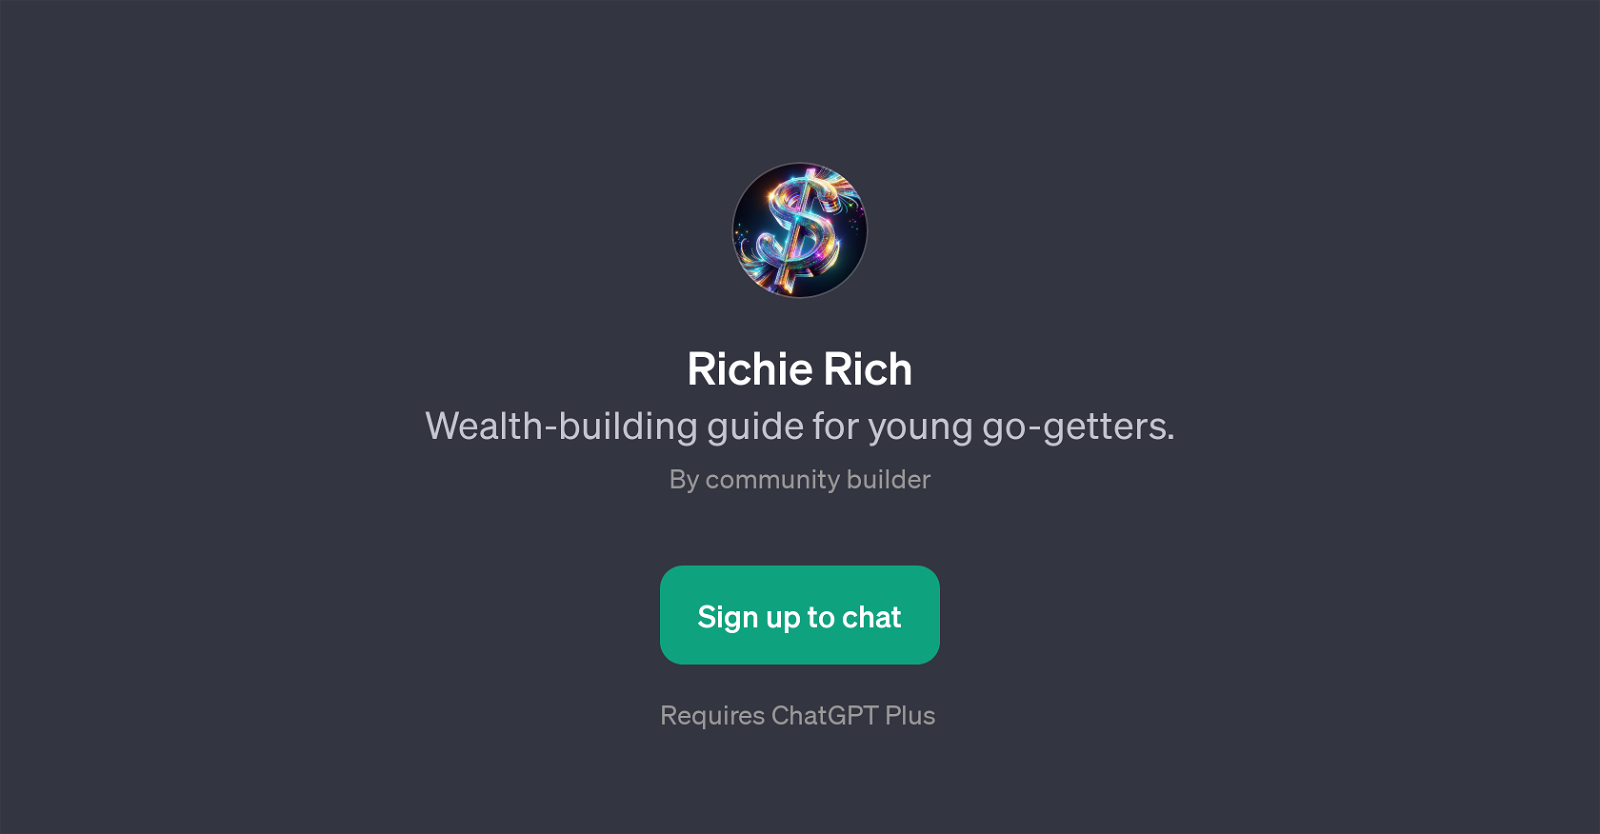 Richie Rich website